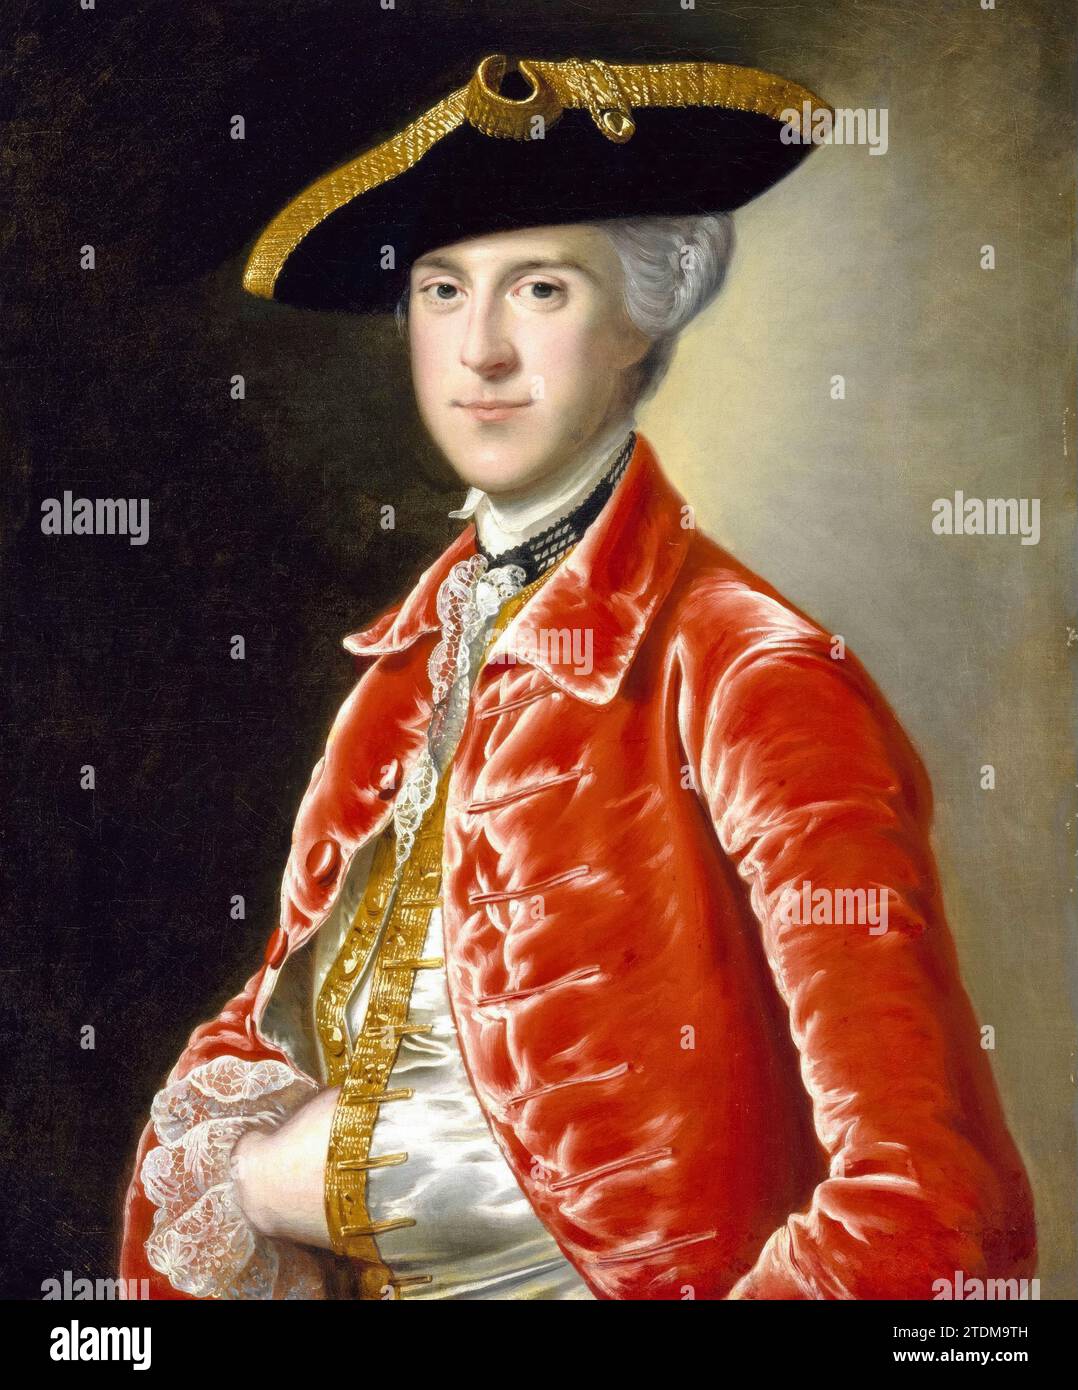 Joseph Wright de Derby, Portrait d'un gentleman, peinture à l'huile sur toile, 1755-1765 Banque D'Images